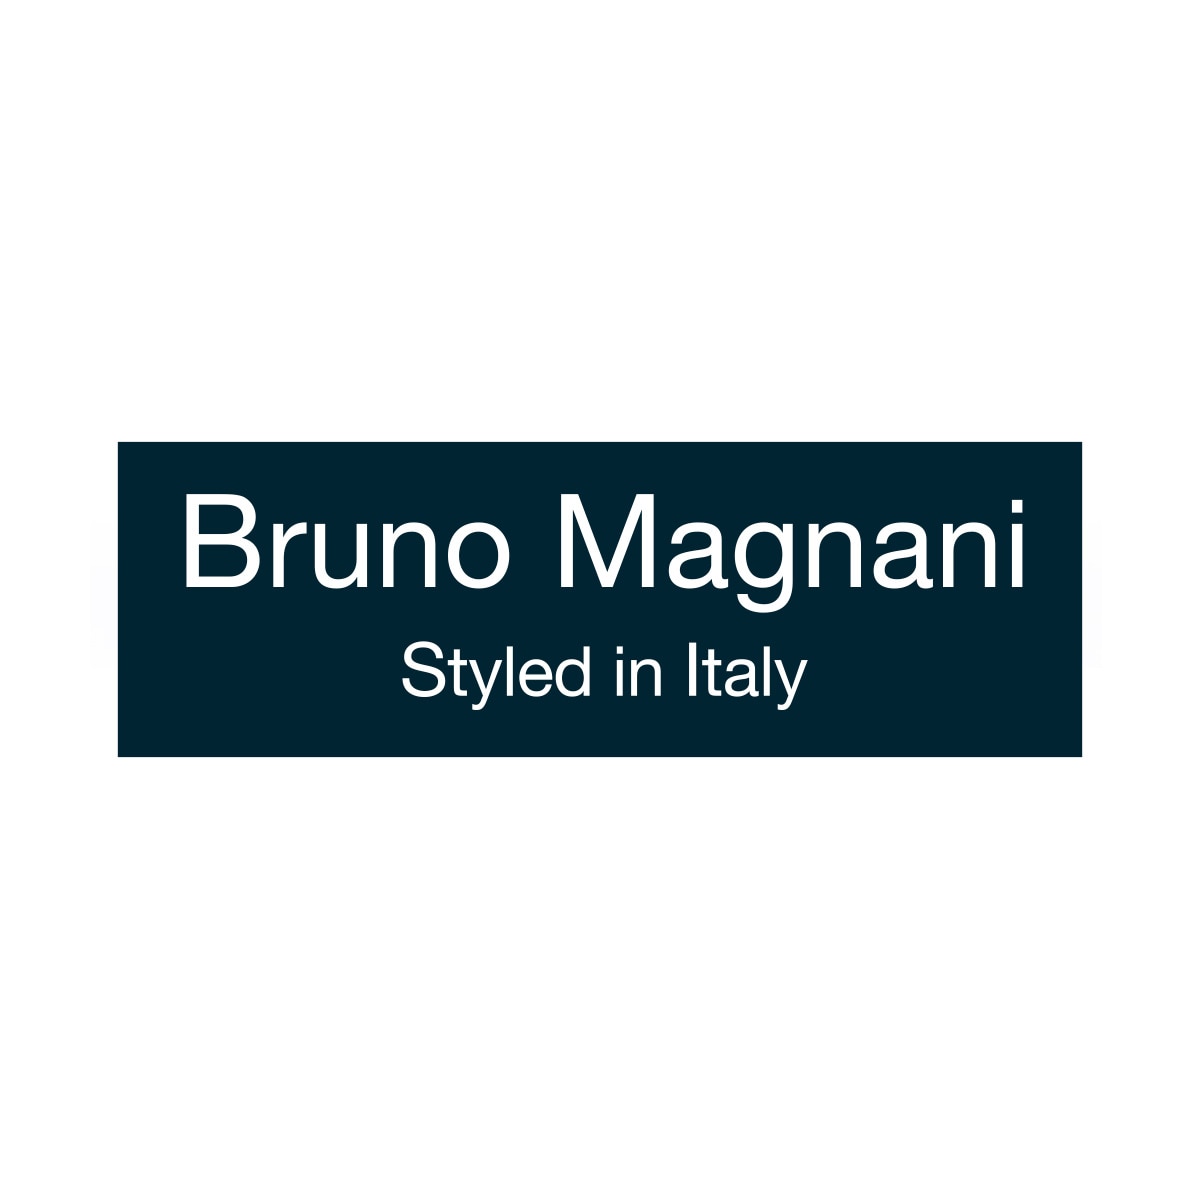 Bruno Magnani